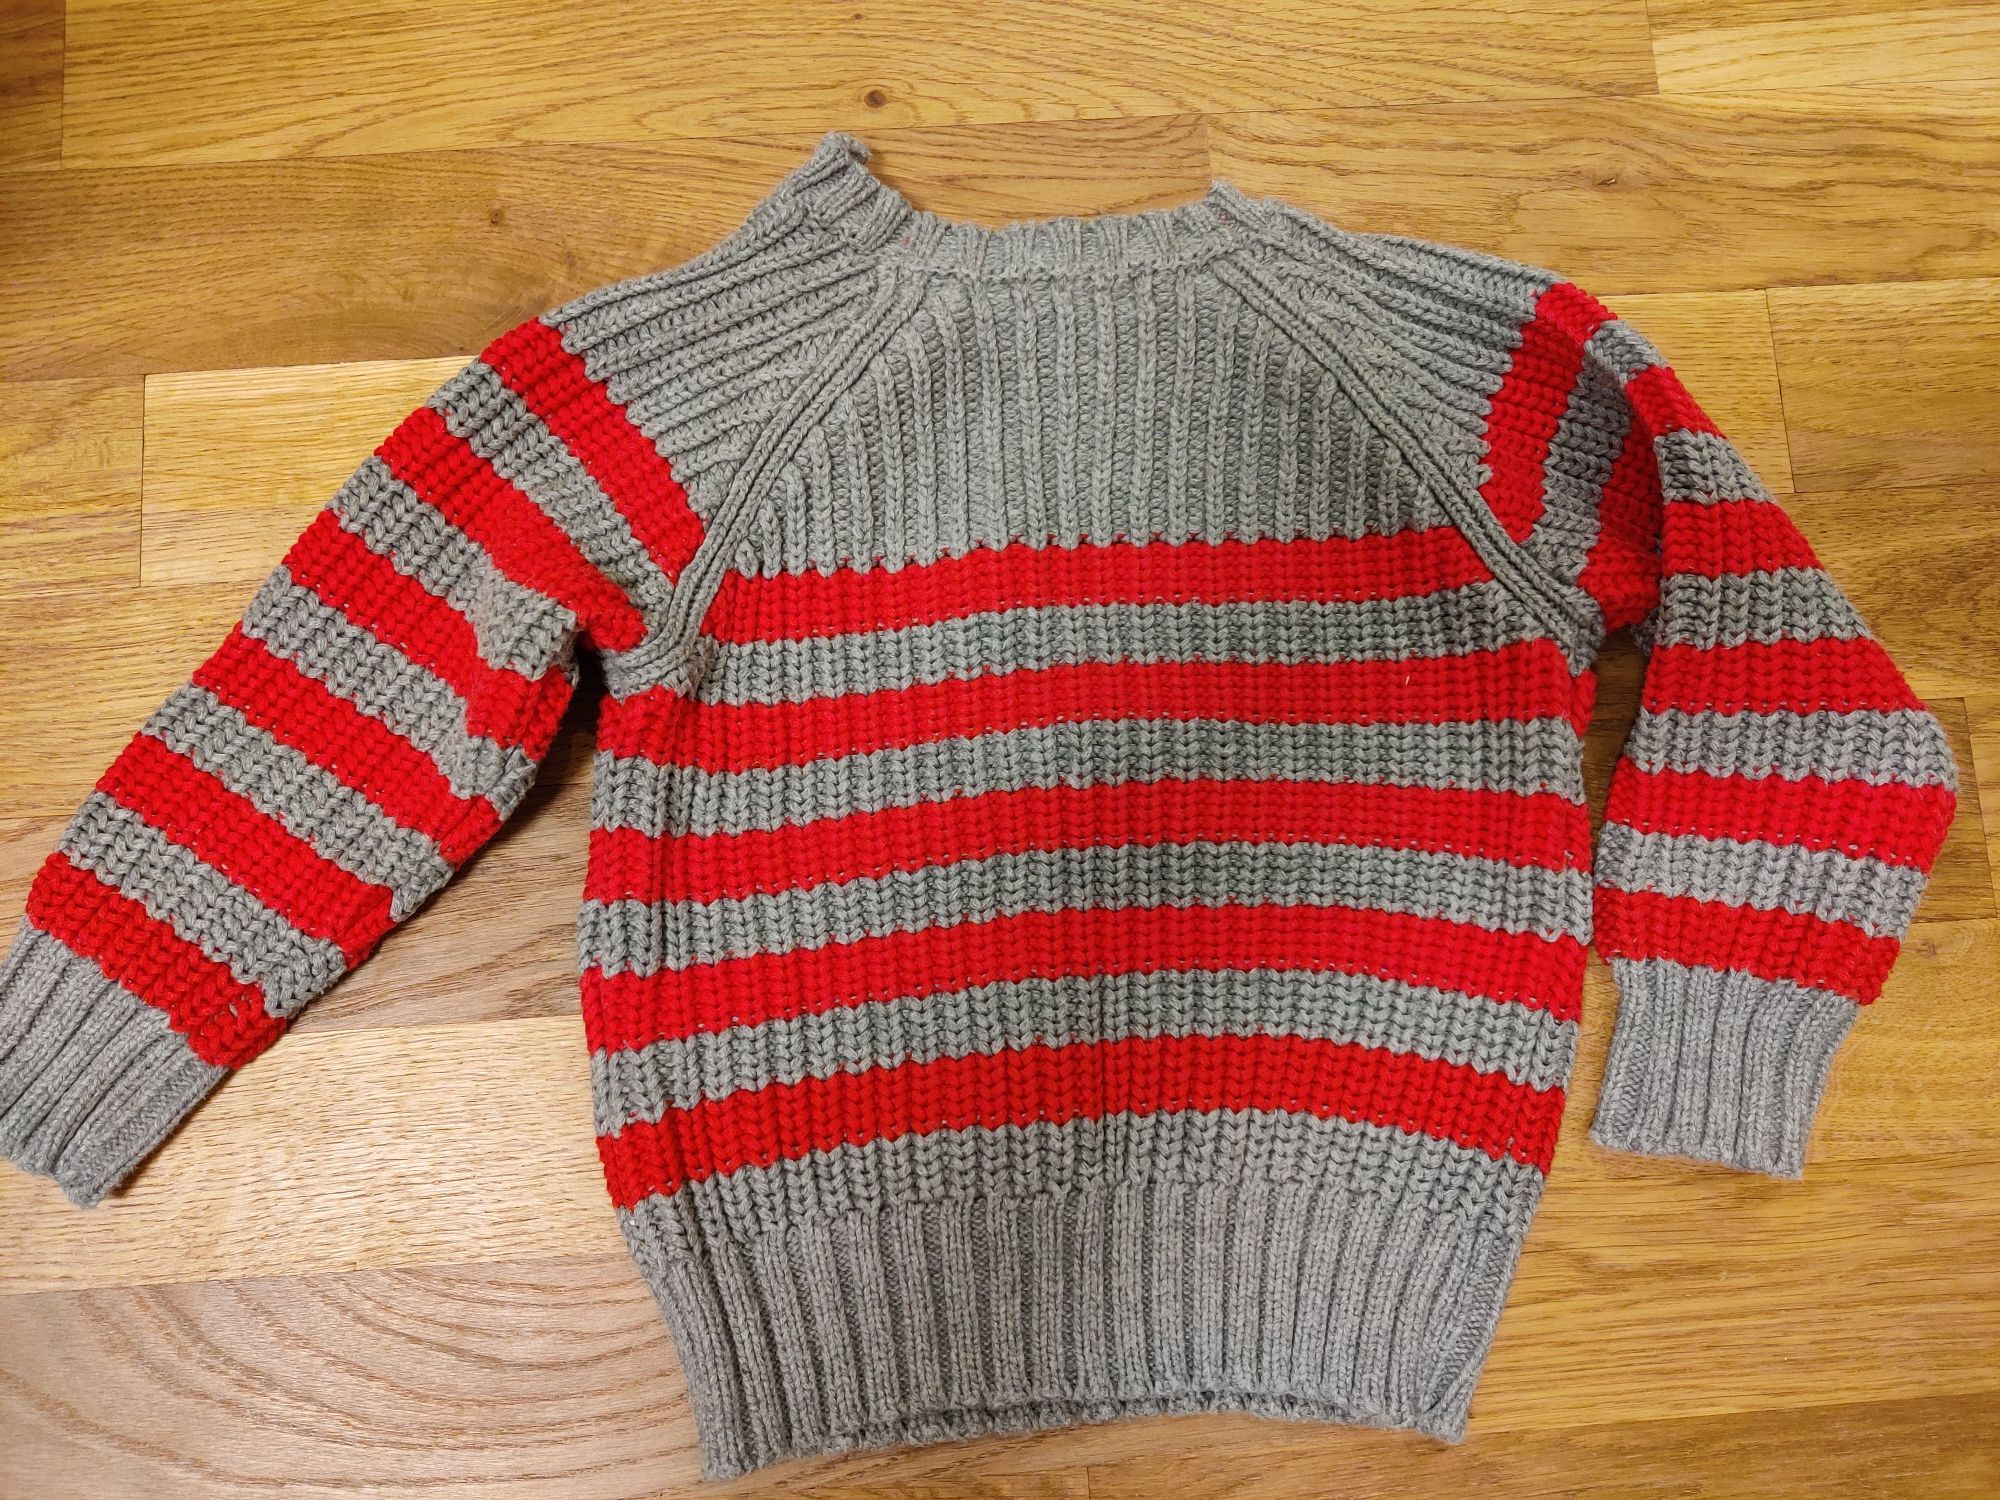 Gruby sweter w czerwone paski, Vertbaudet, 94cm